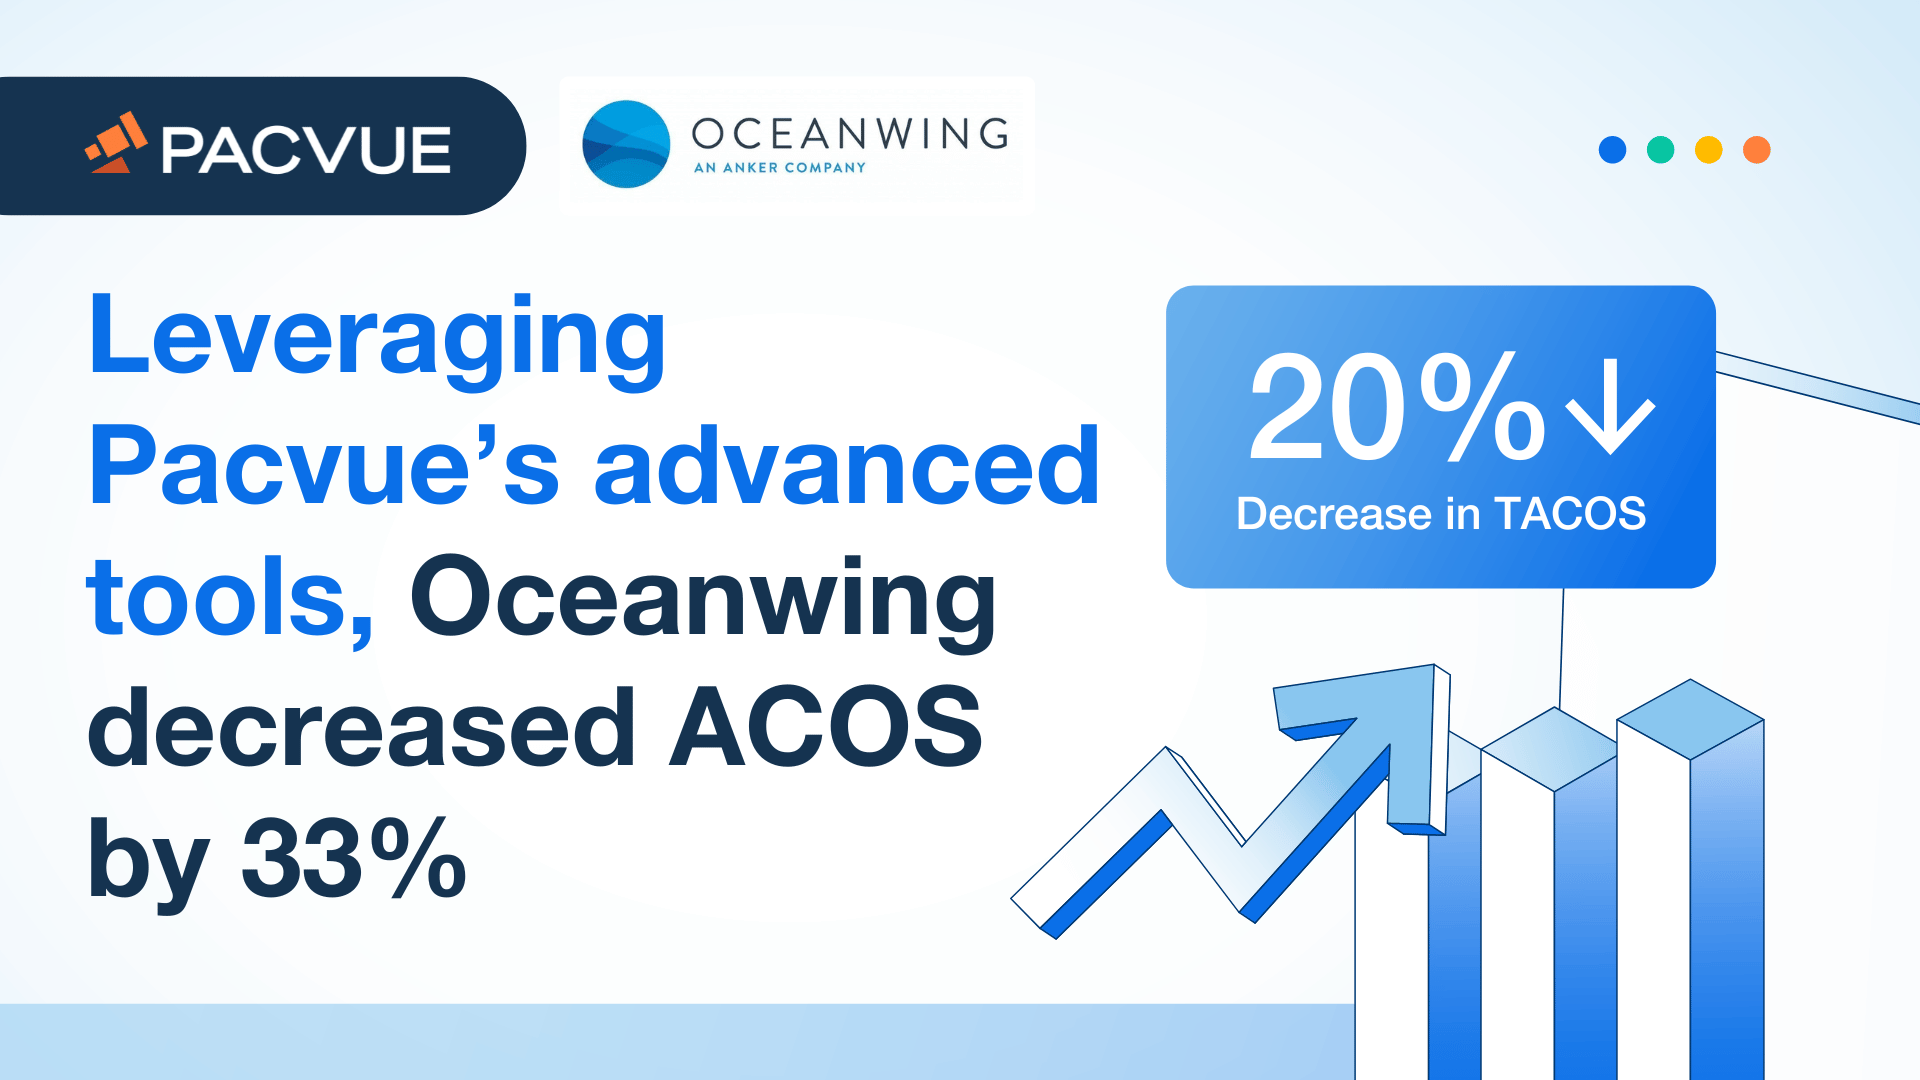 Gracias a las herramientas avanzadas de Pacvue, Oceanwing redujo el ACOS en un 33%.